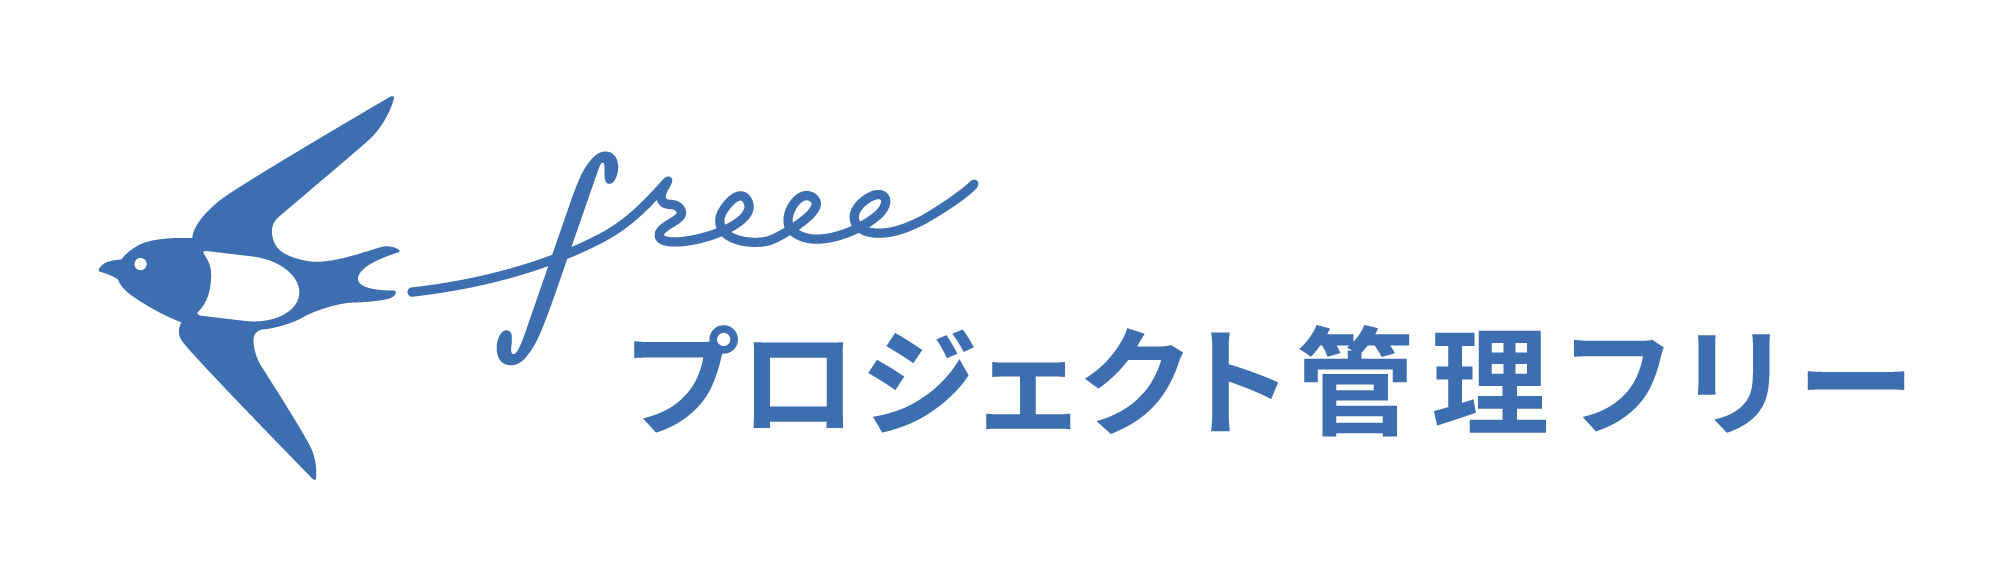 【画像】freeeプロジェクト管理のロゴ